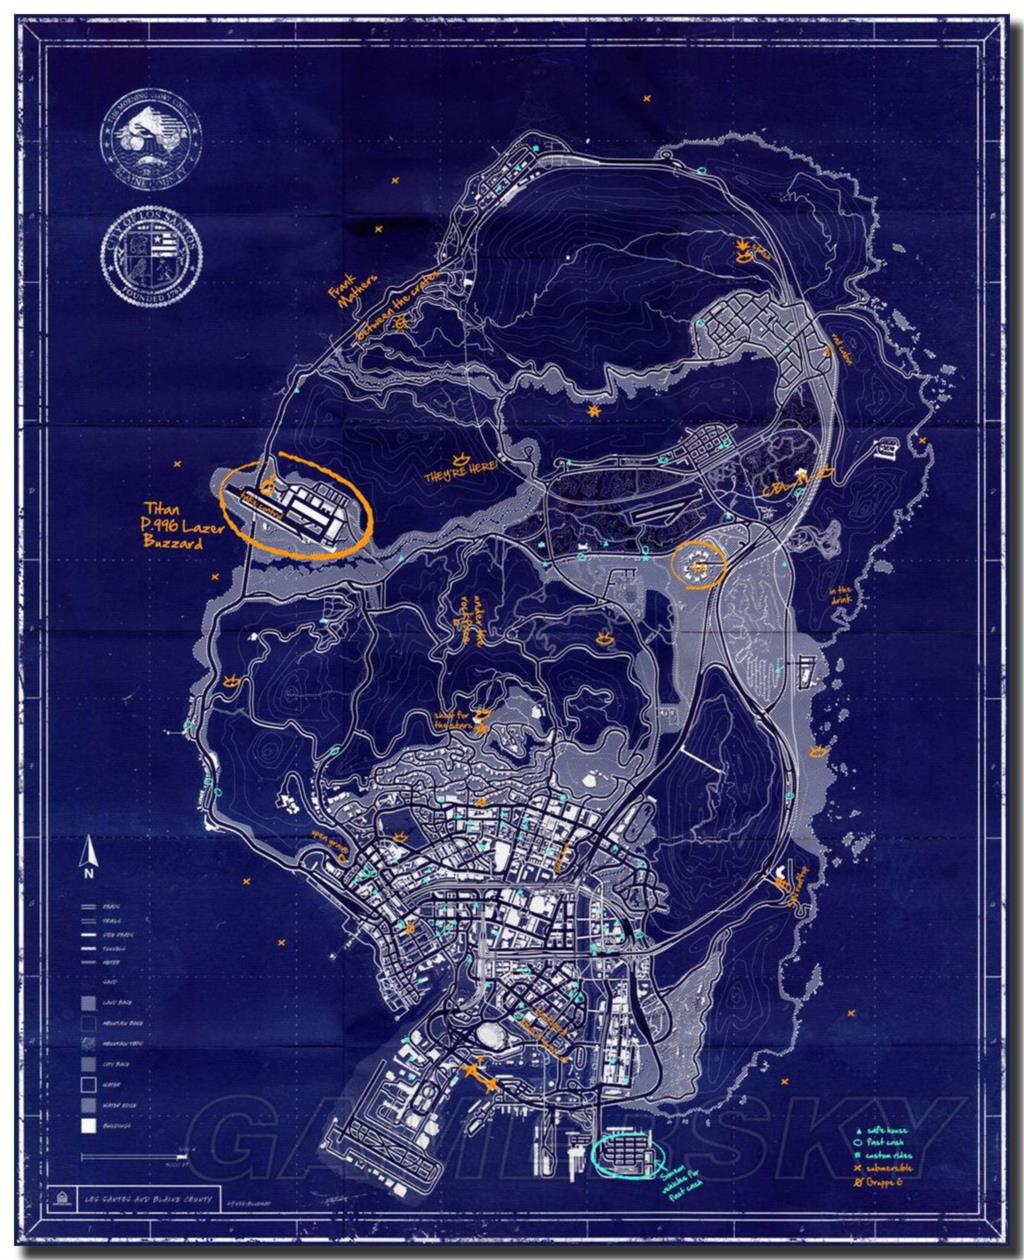 GTA V Map Wallpapers - Wallpaper Cave